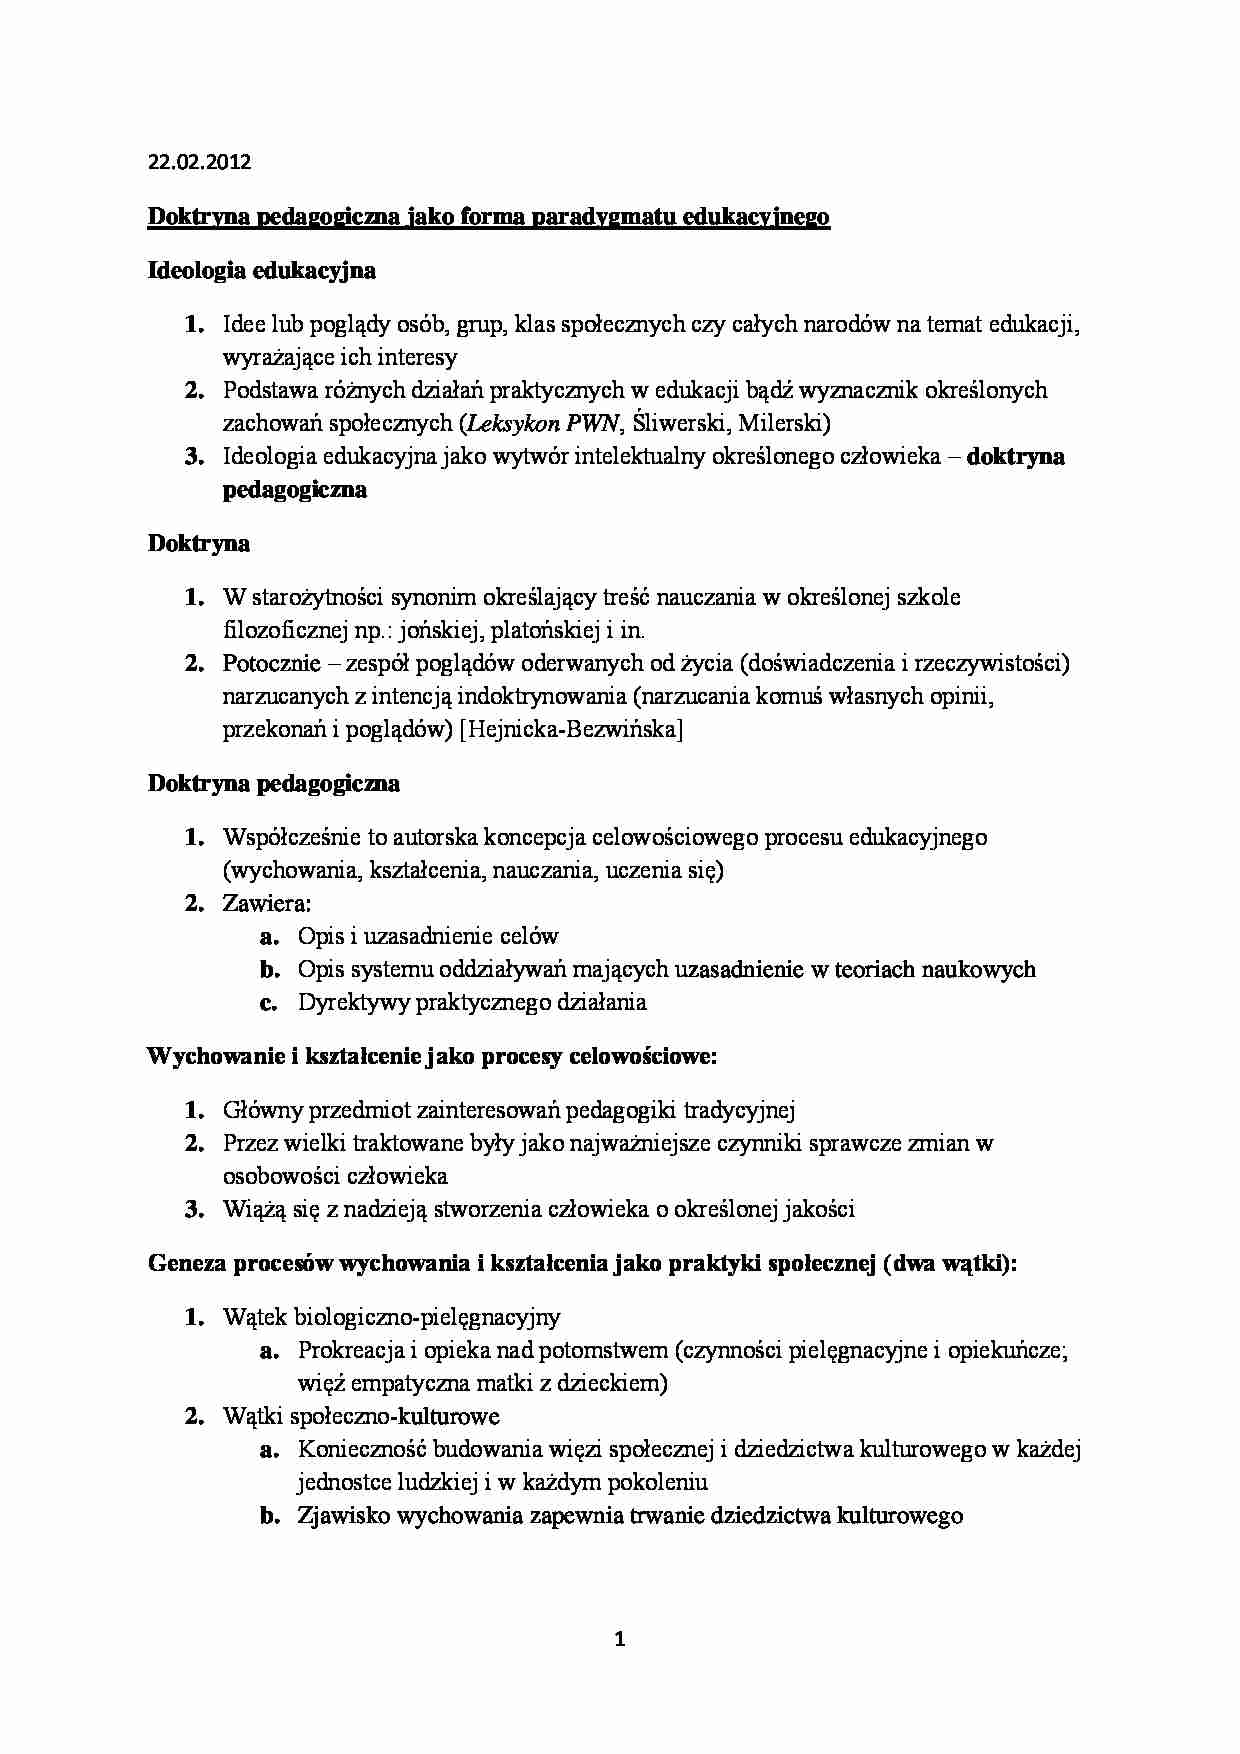 Doktryny pedagogiczne - komplet notatek z wykładów - strona 1